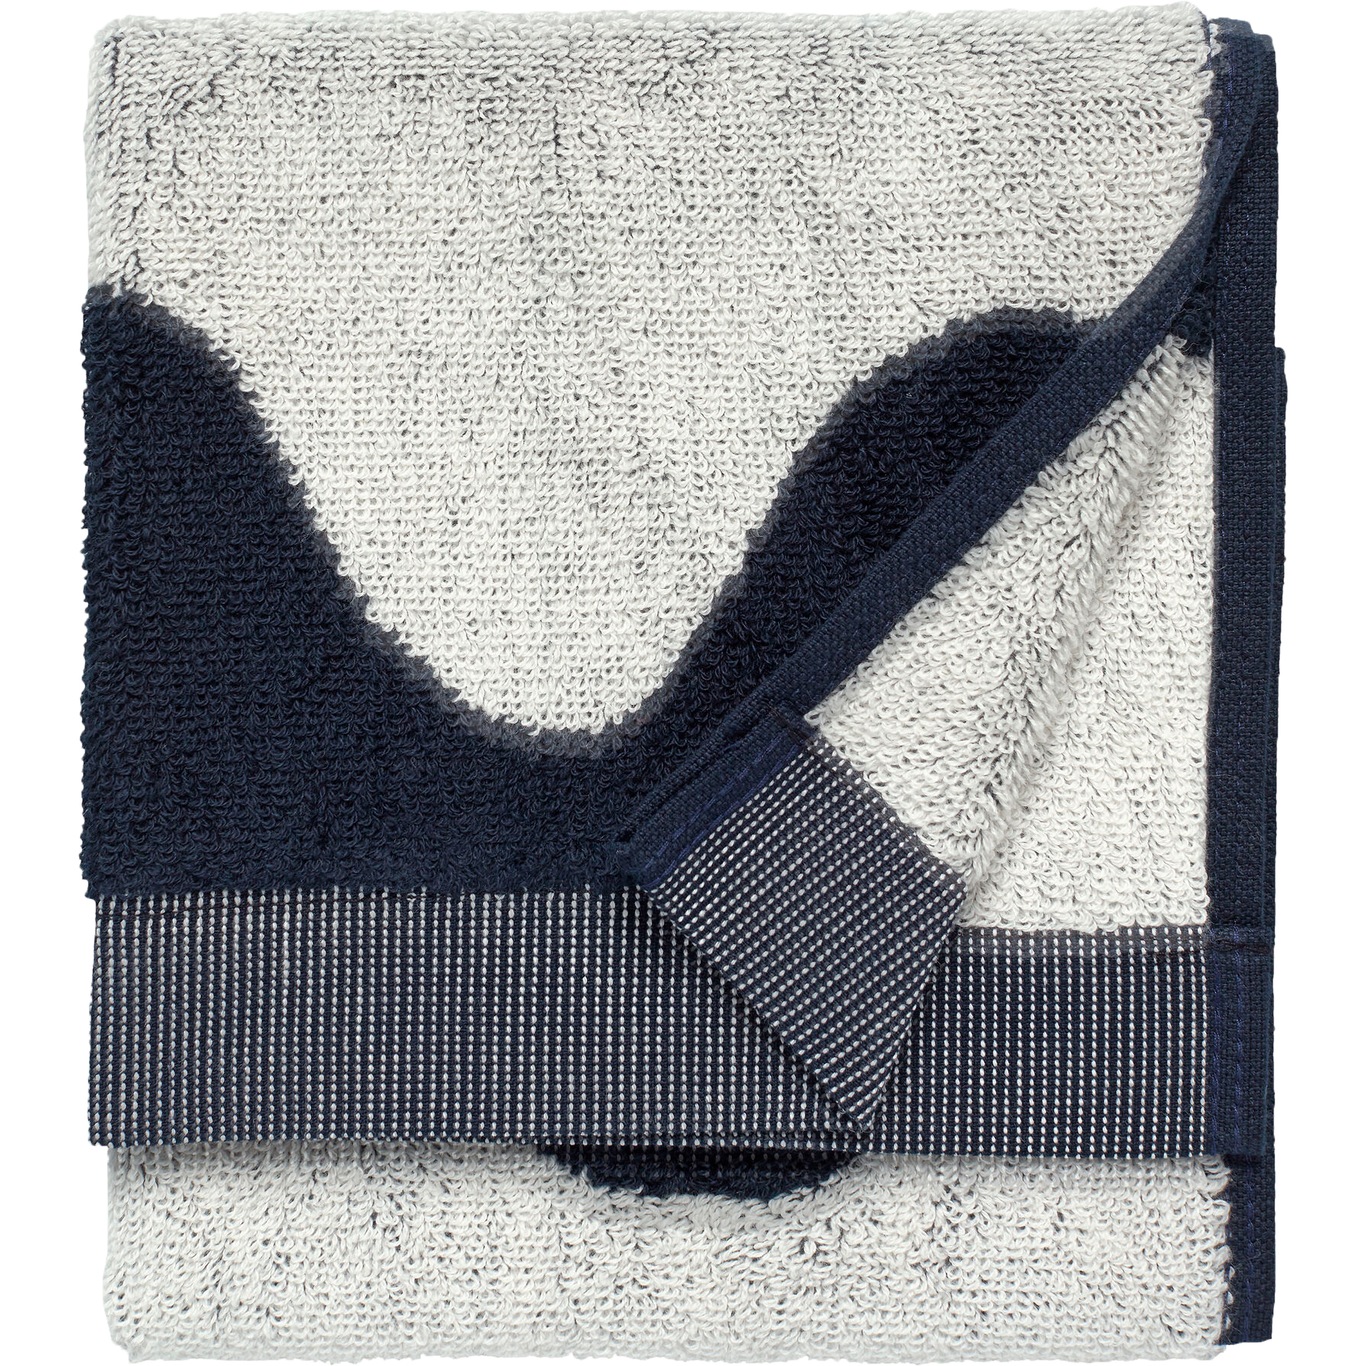 Lokki Guest Towel Dark Blue / Off-white, 30x50 cm